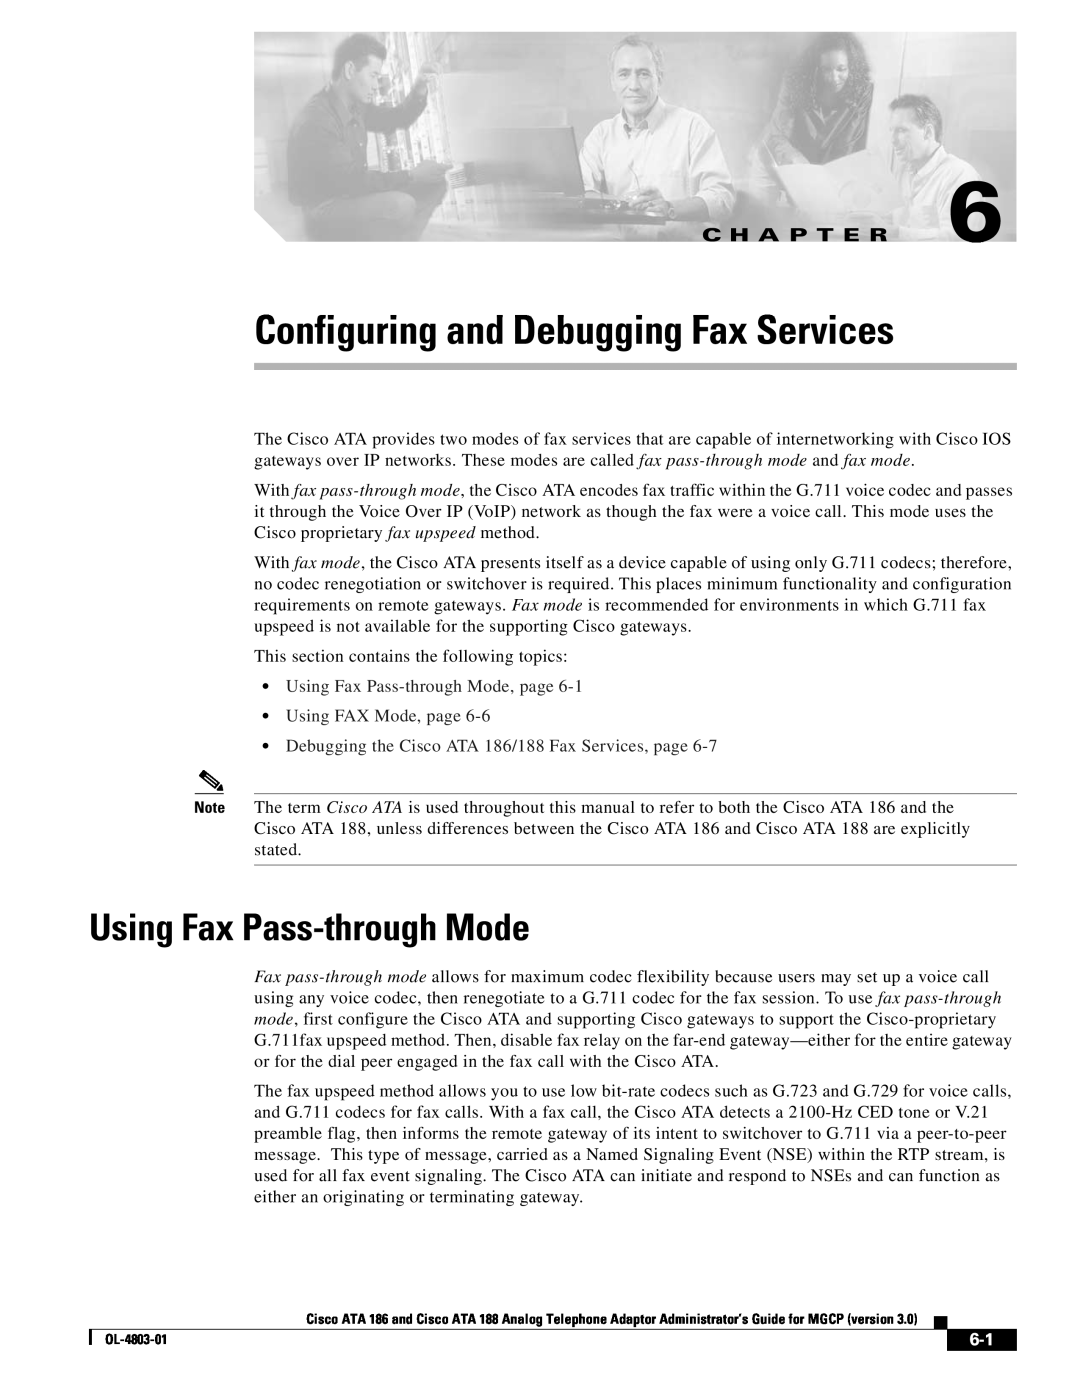 Cisco Systems ATA 188, ATA 186 manual Configuring and Debugging Fax Services, Using Fax Pass-through Mode, C H A P T E R 